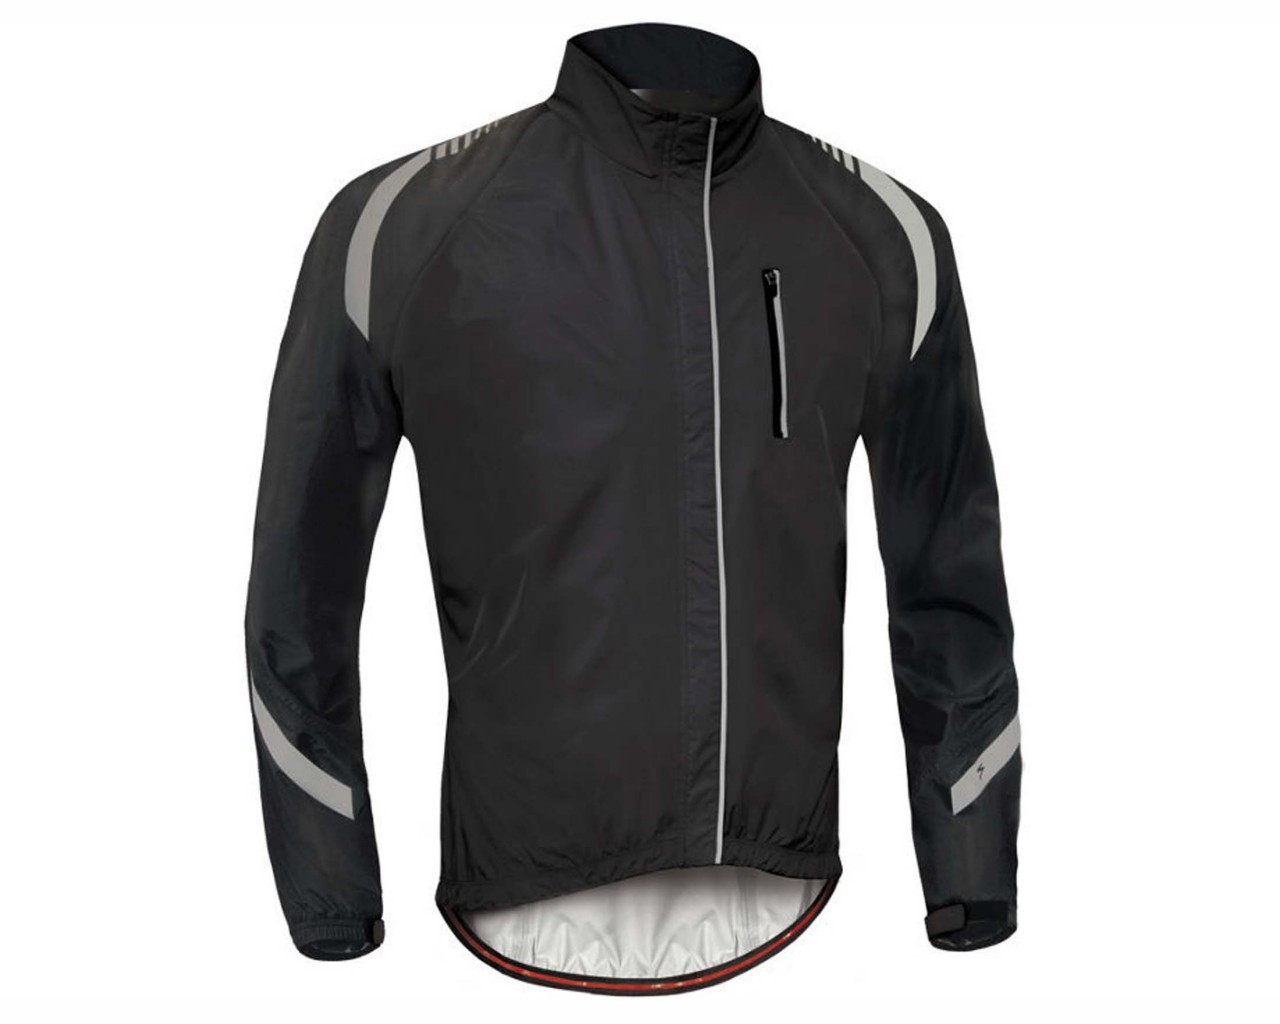 Specialized Deflect RBX Elite Hi-Vis Rain Jacket | black carbon